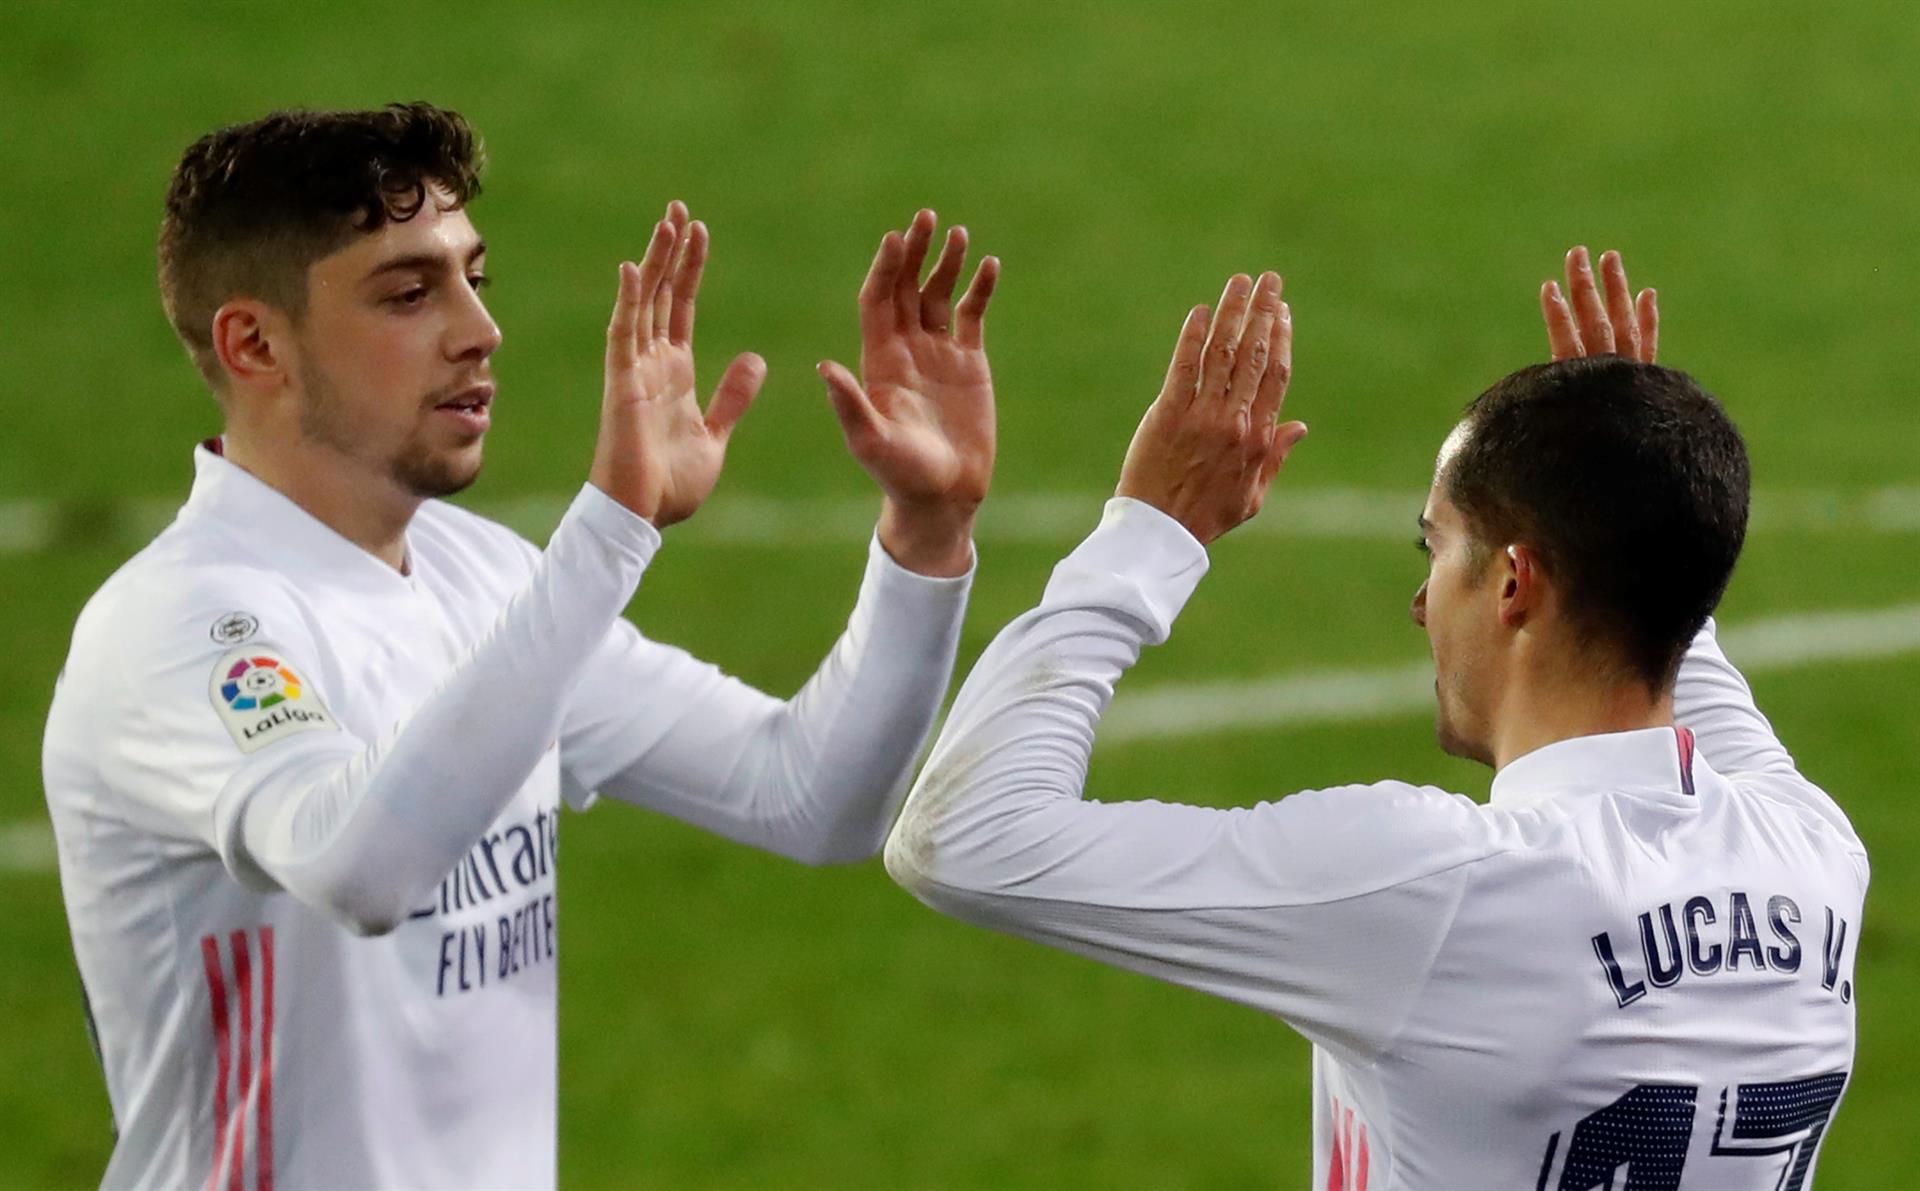 El Real Madrid, con la vista en el futuro: Renueva a uno de sus mejores jugadores jóvenes hasta 2027